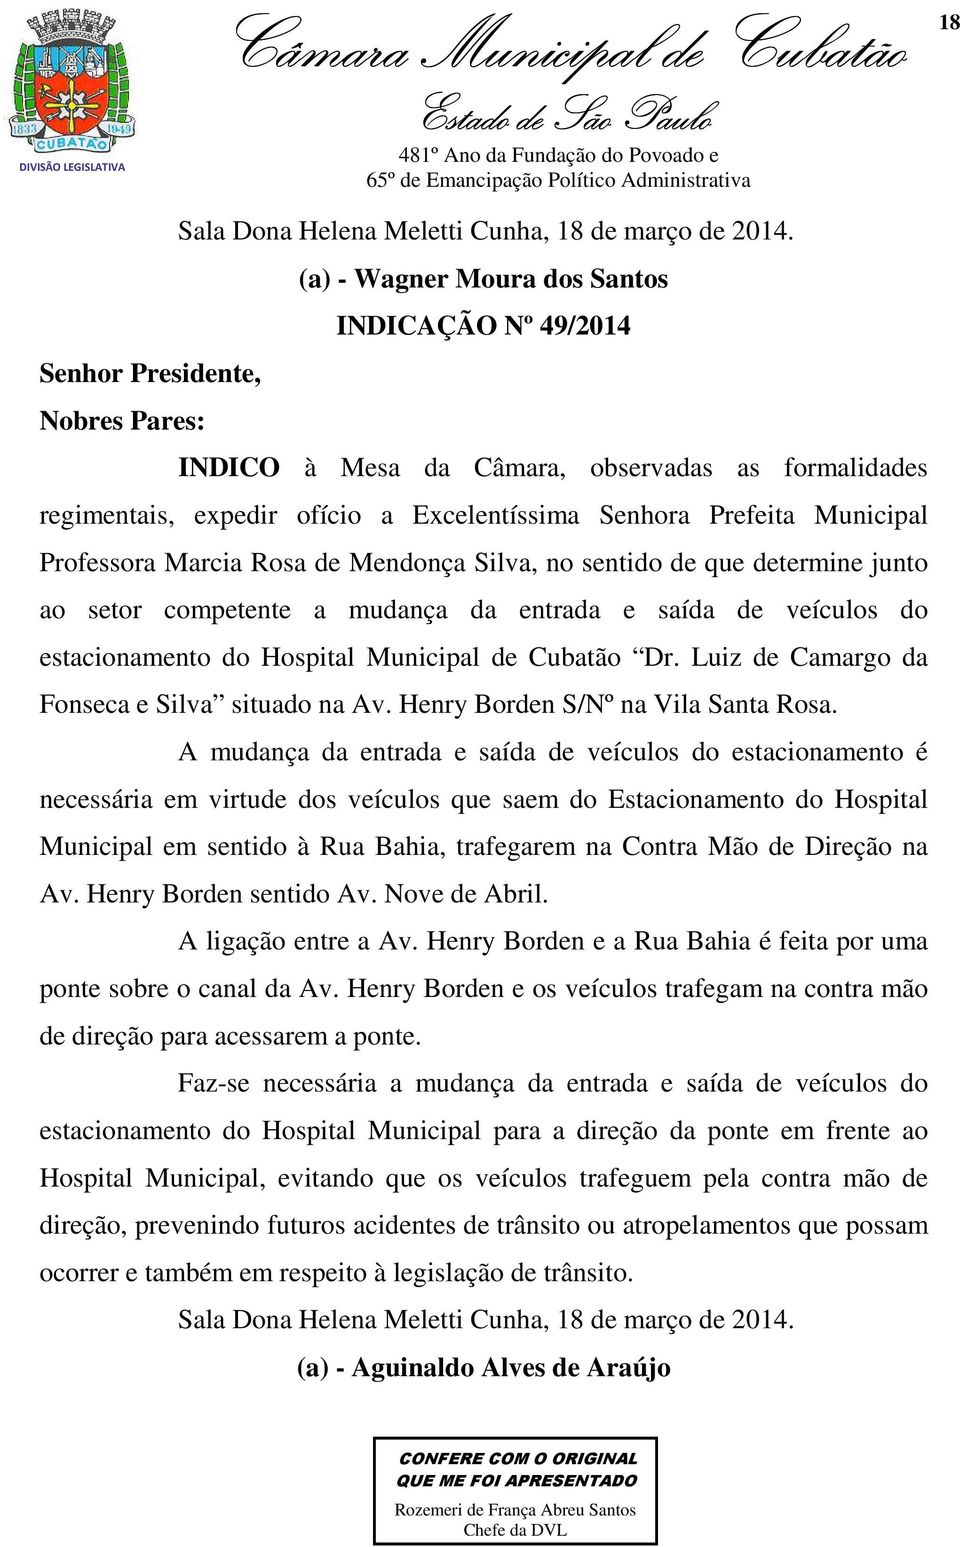 Municipal Professora Marcia Rosa de Mendonça Silva, no sentido de que determine junto ao setor competente a mudança da entrada e saída de veículos do estacionamento do Hospital Municipal de Cubatão